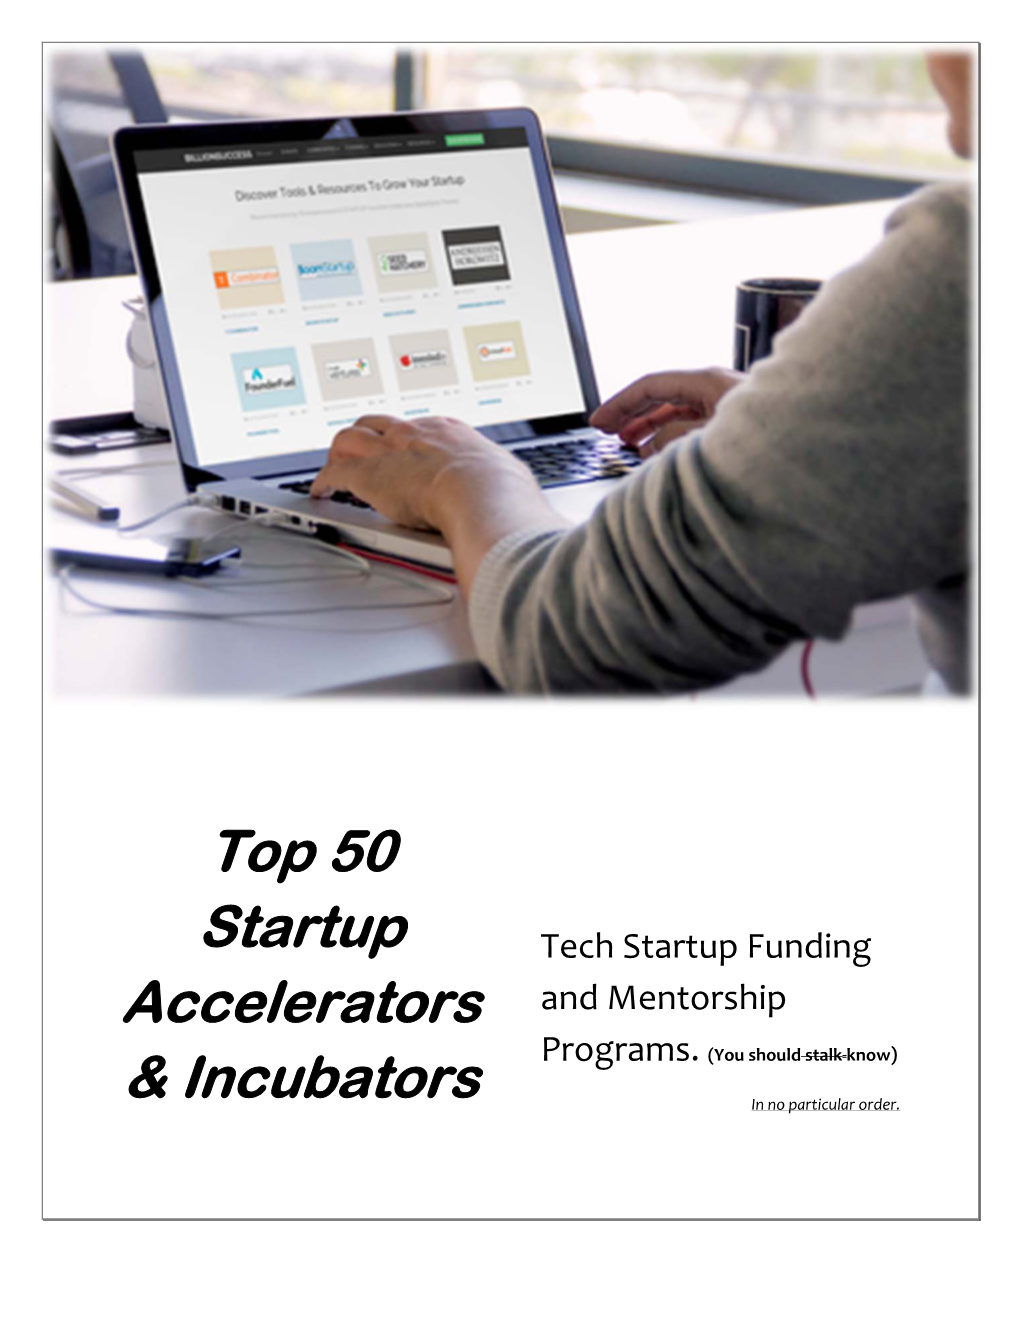 Top 50 Startup Accelerators & Incubators